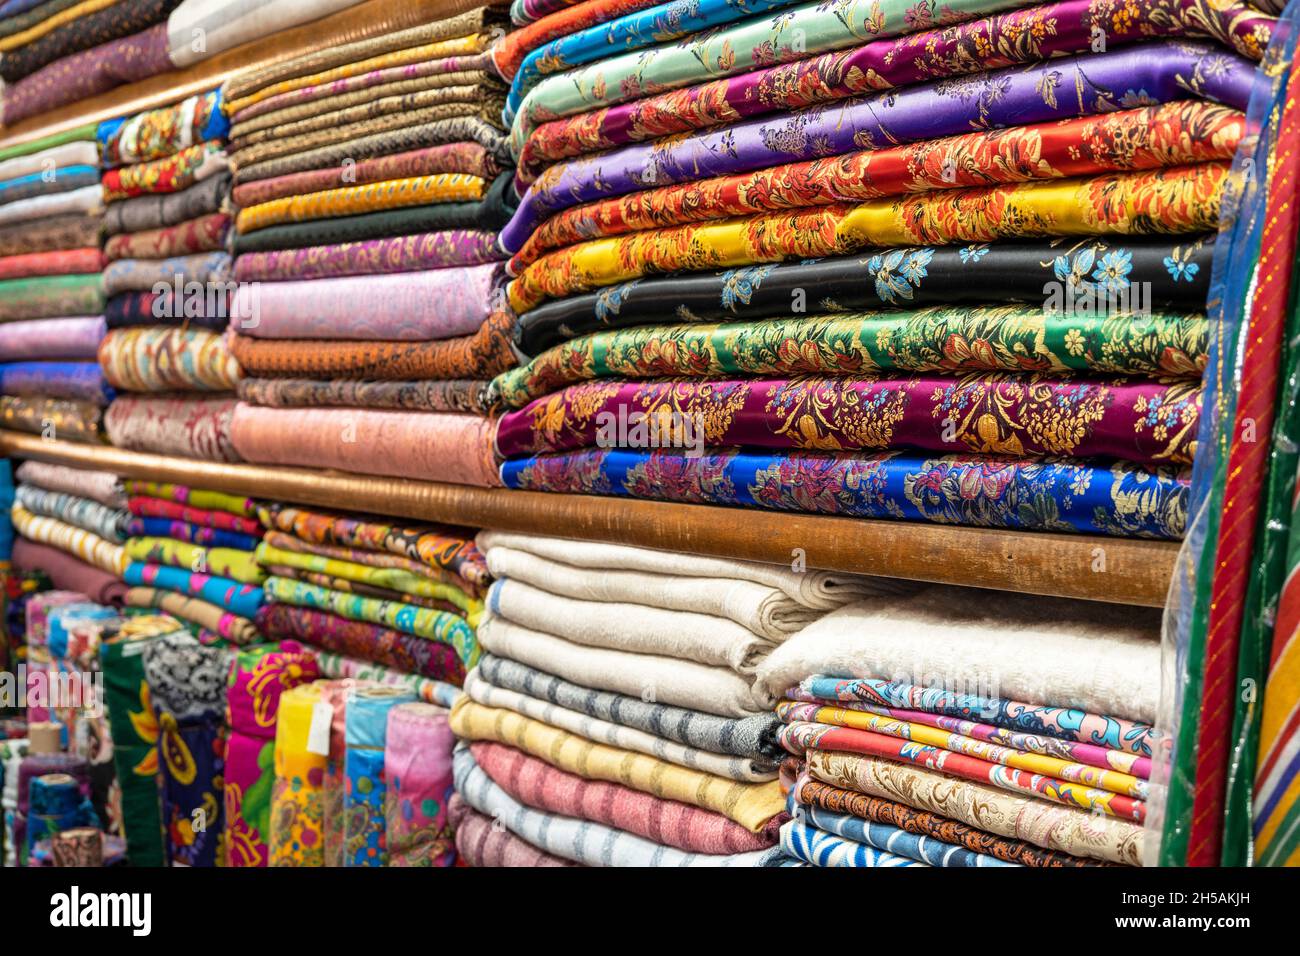 Textile ou tissu coloré sur un marché asiatique de la rue, étagères avec rouleaux de tissu et de textile Banque D'Images